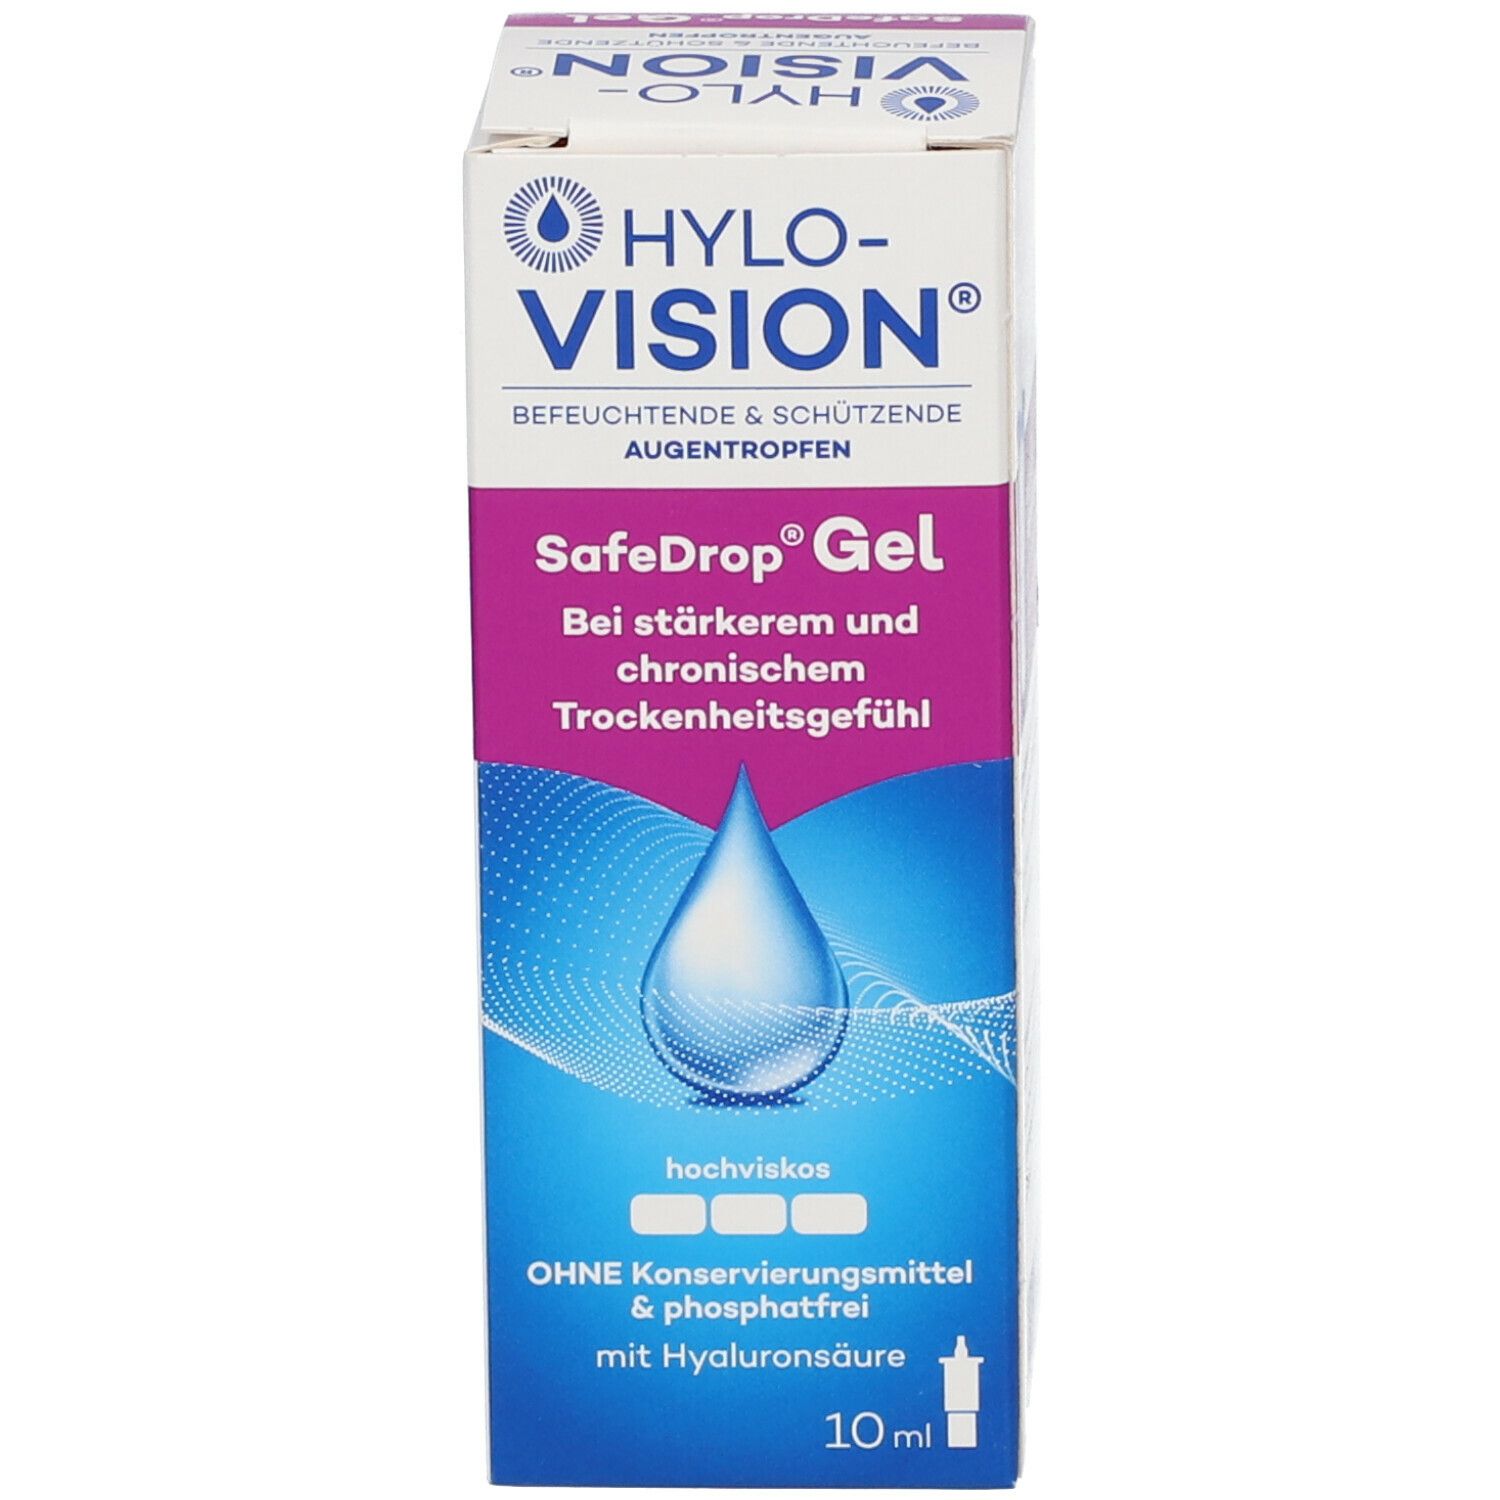 Hylo-Vision® SafeDrop® Gel